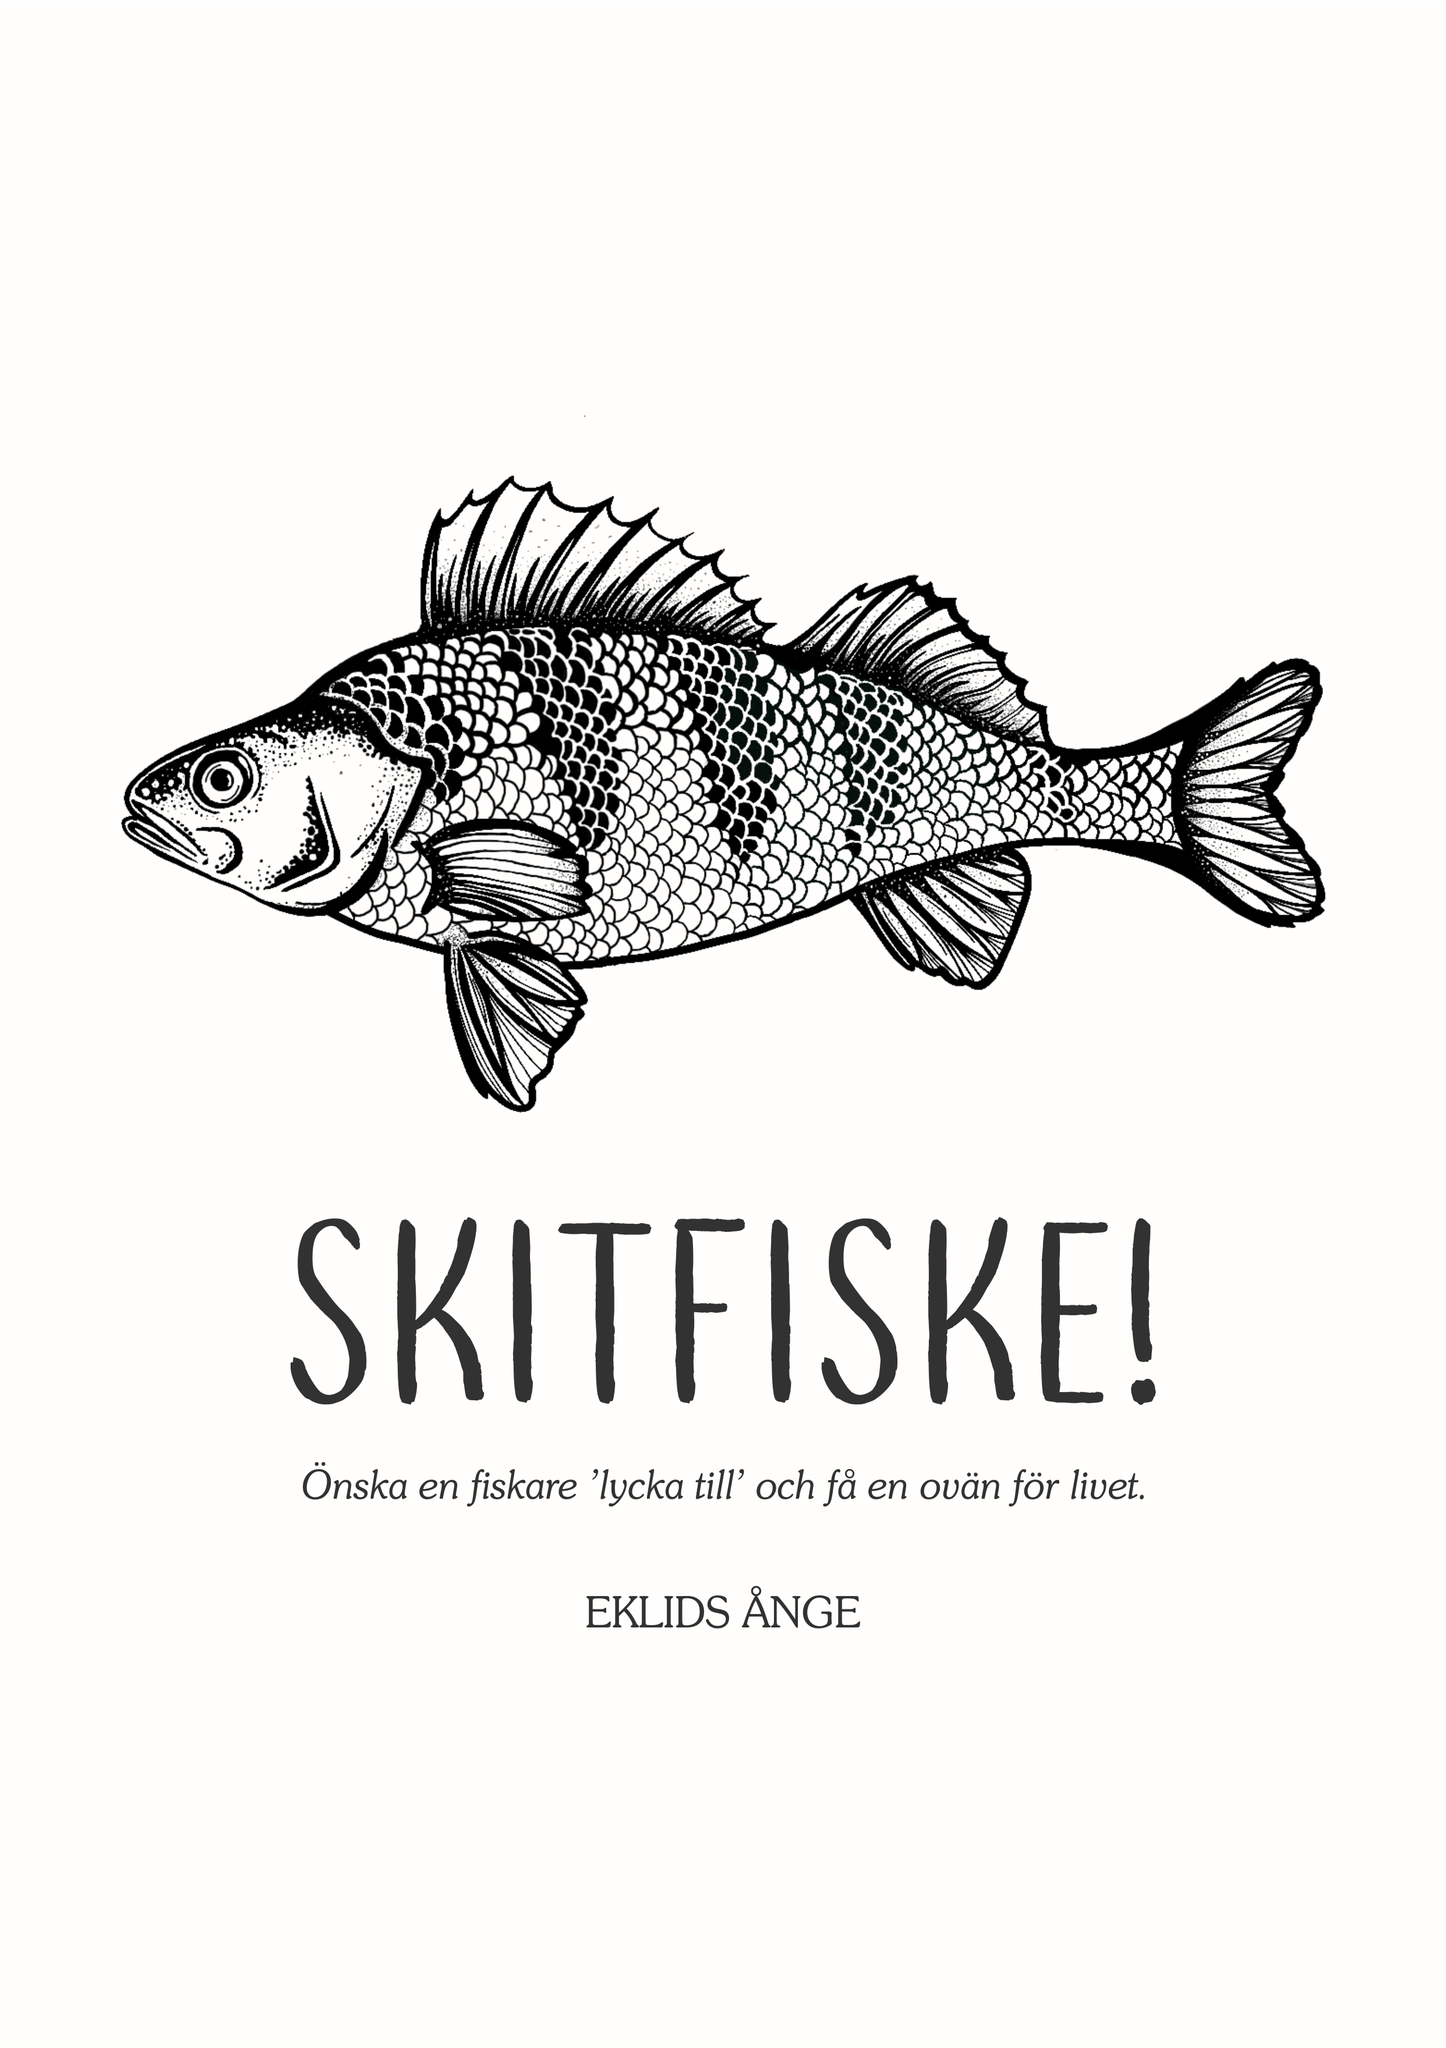 EKLIDS poster: "Skitfiske!"